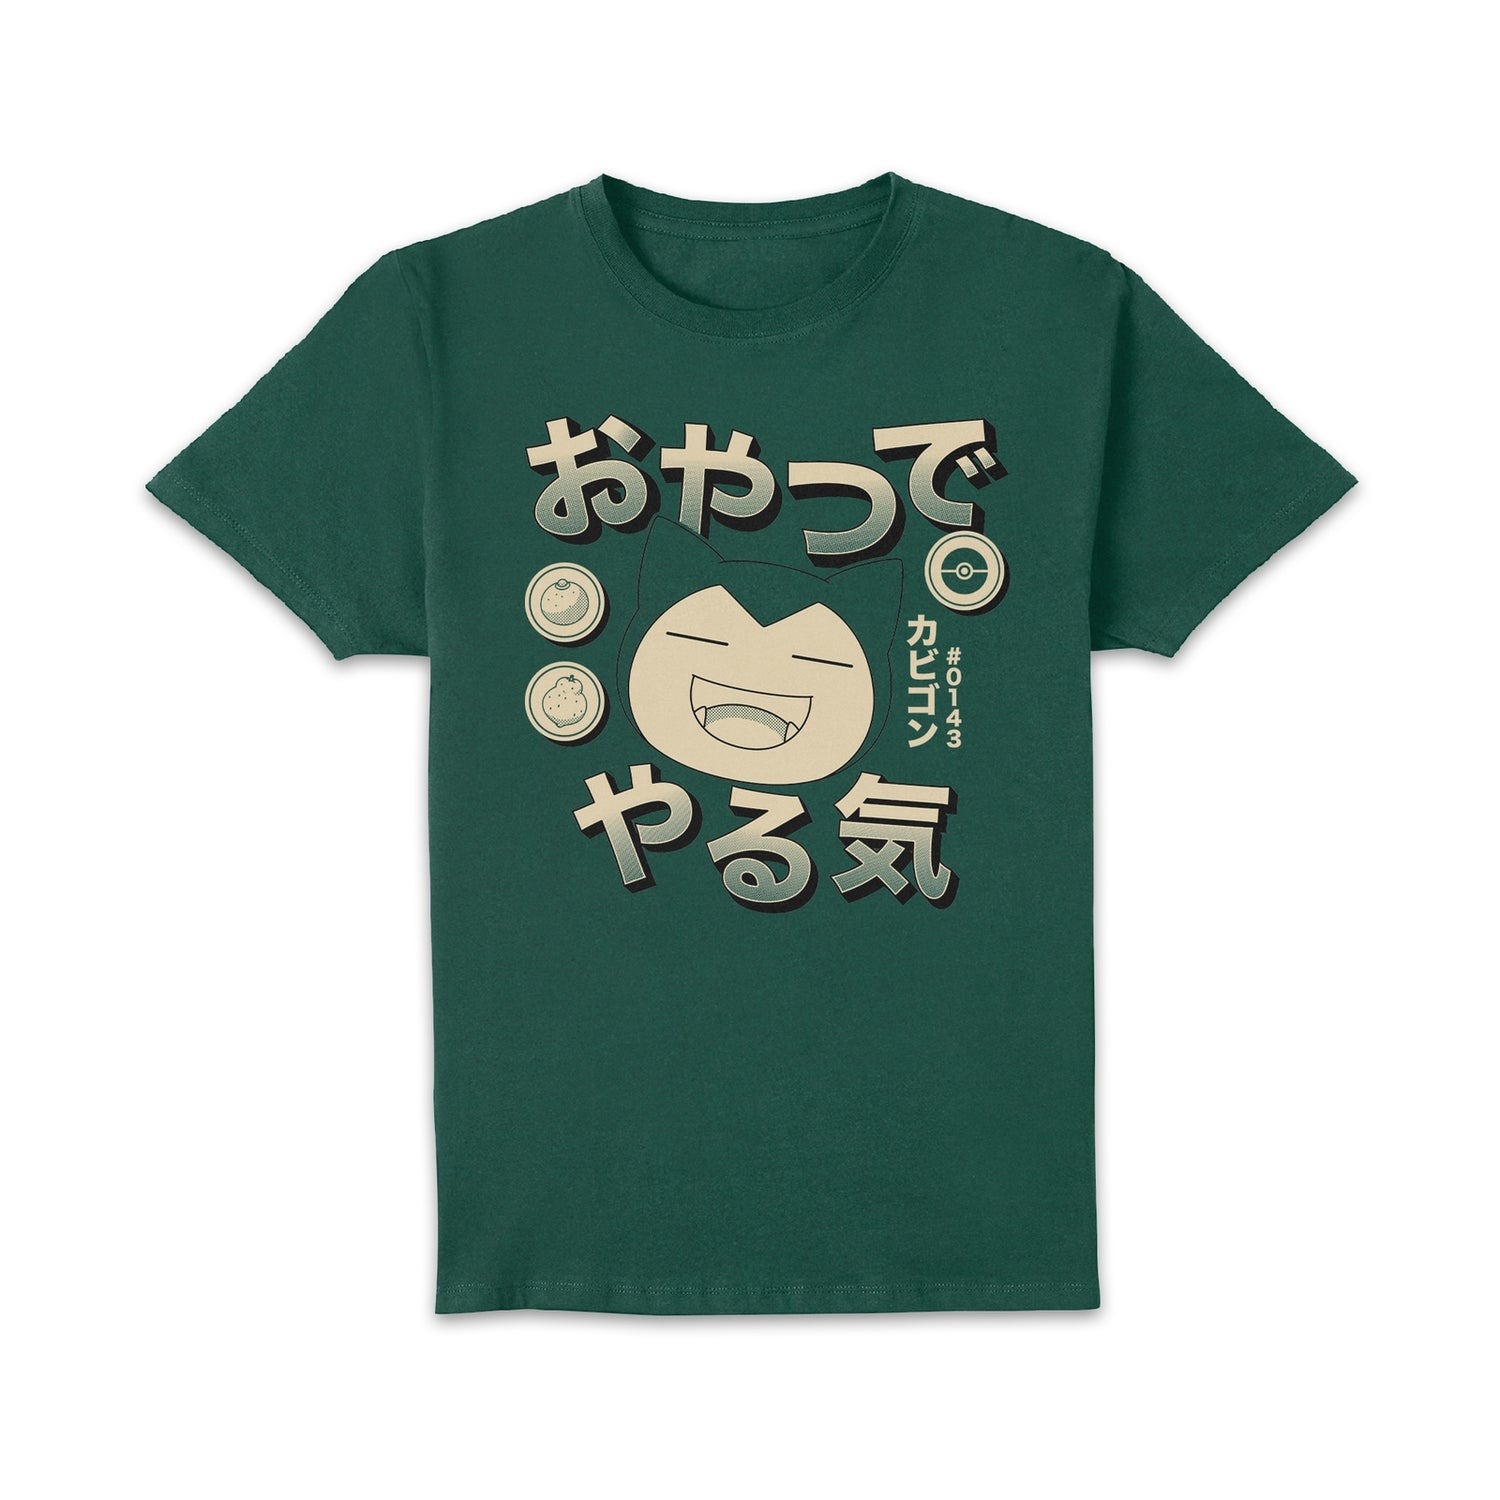 Pokémon Snorlax Hungry T-Shirt - Green